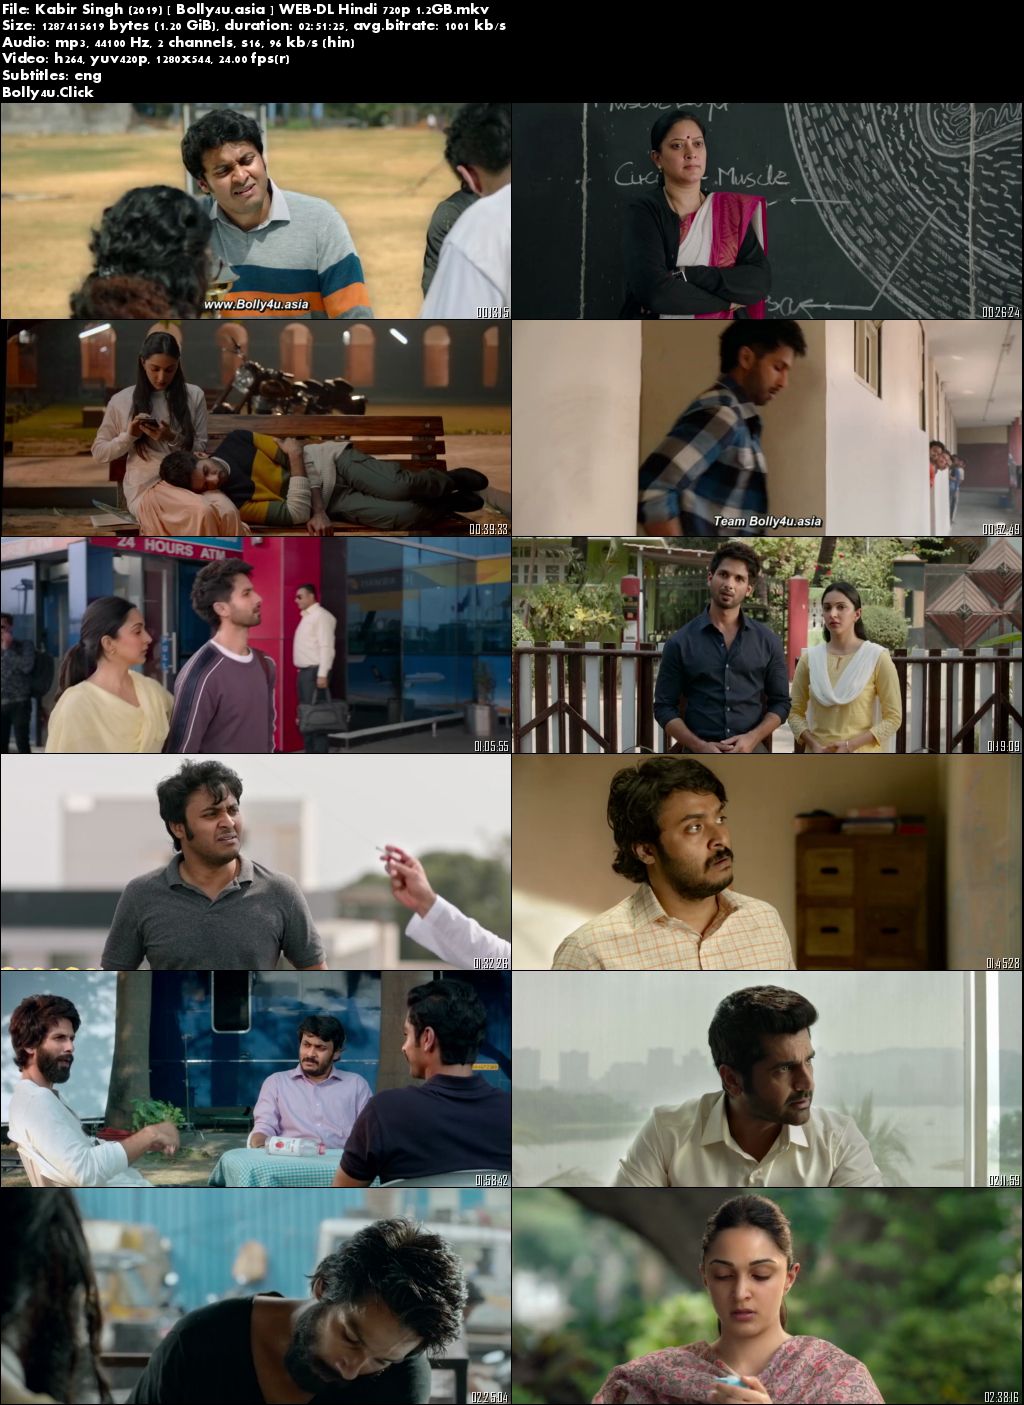 Kabir Singh 2019 WEB-DL Full Hindi Movie Download 1080p 720p 480p